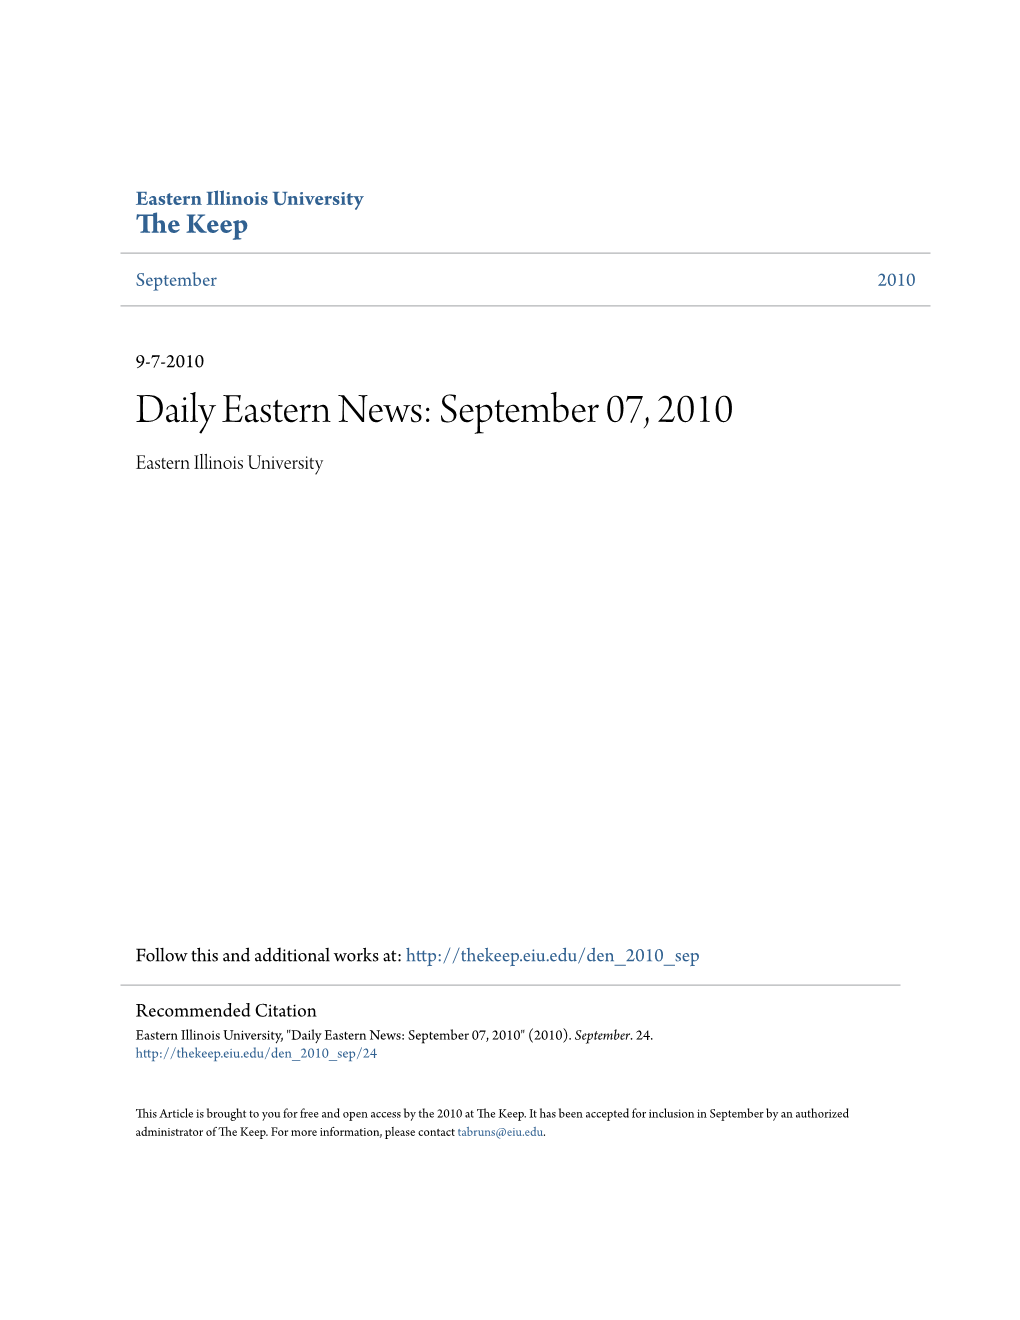 Daily Eastern News: September 07, 2010 Eastern Illinois University